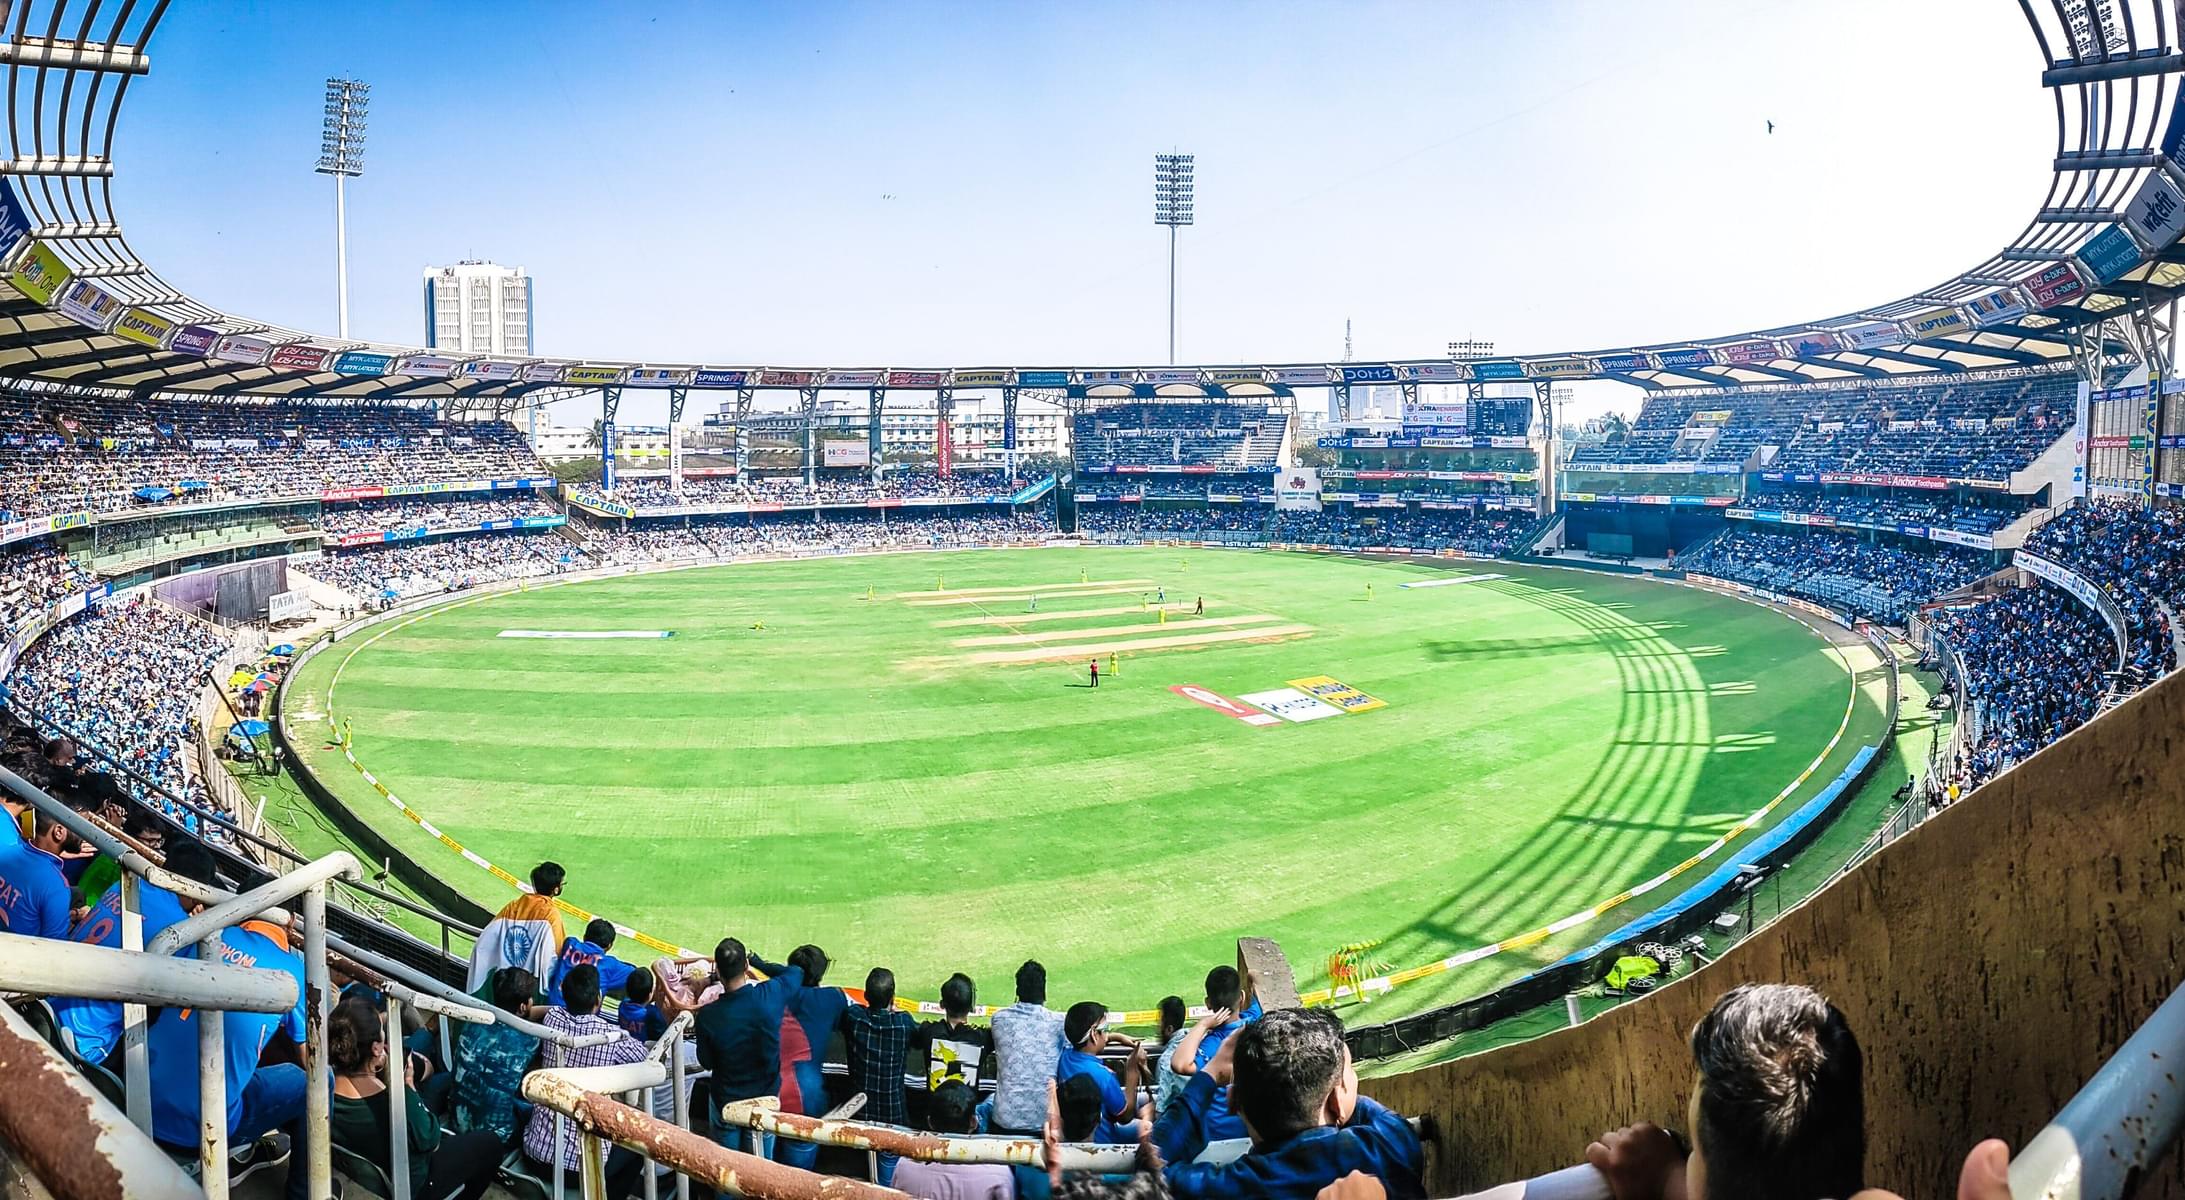 Oval Cricket Stadium